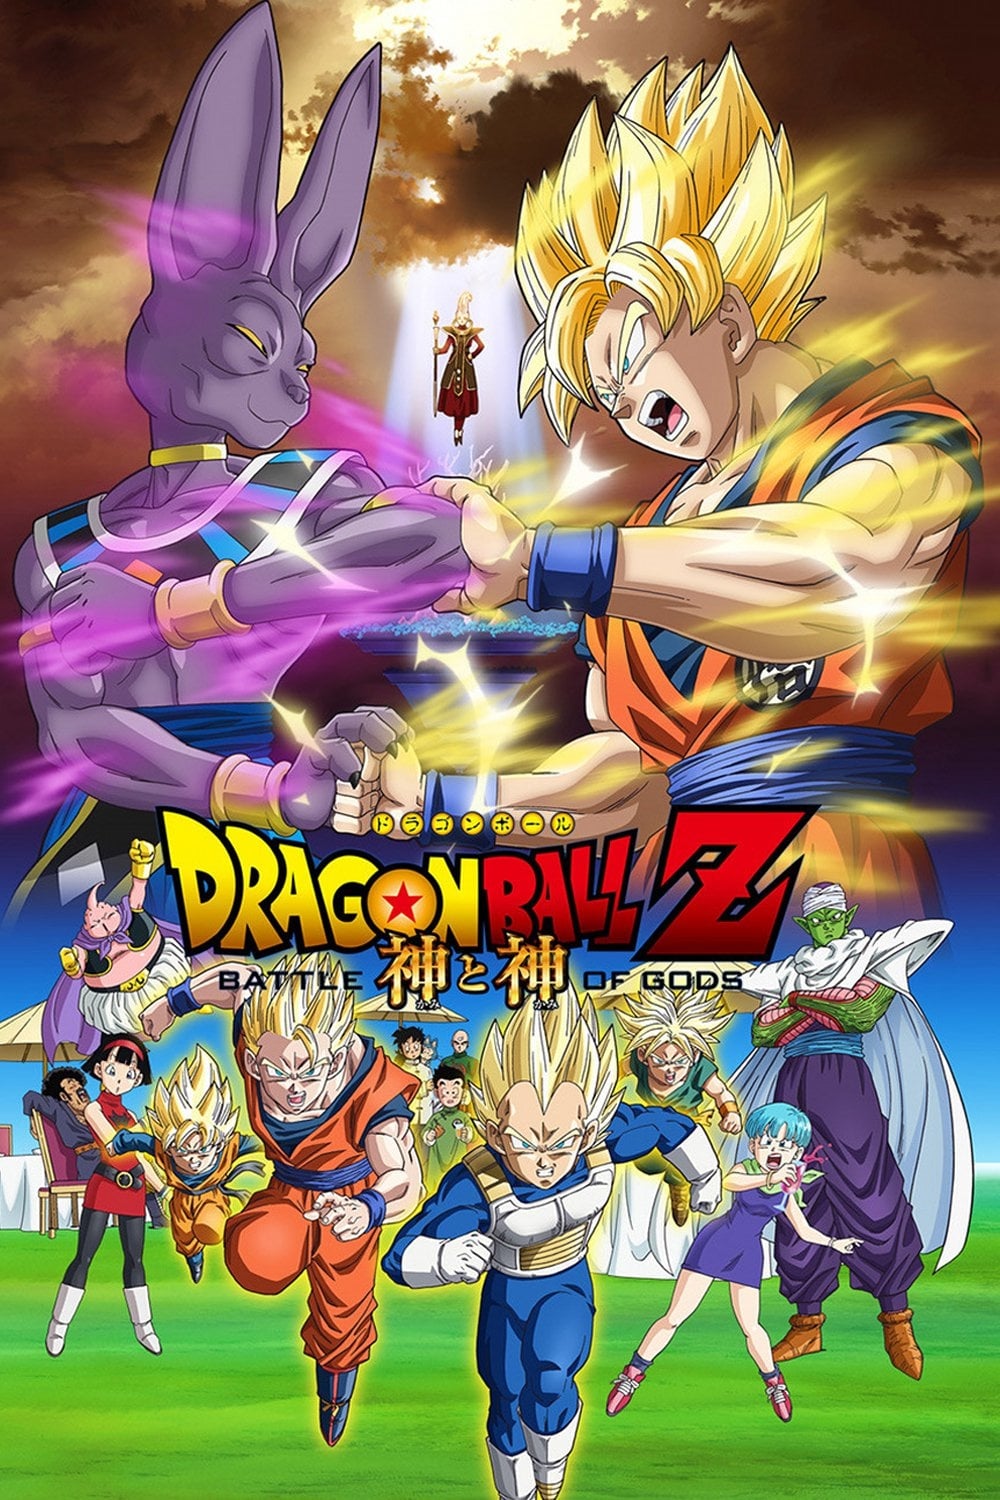 Dragon Ball Z: La Batalla de los Dioses